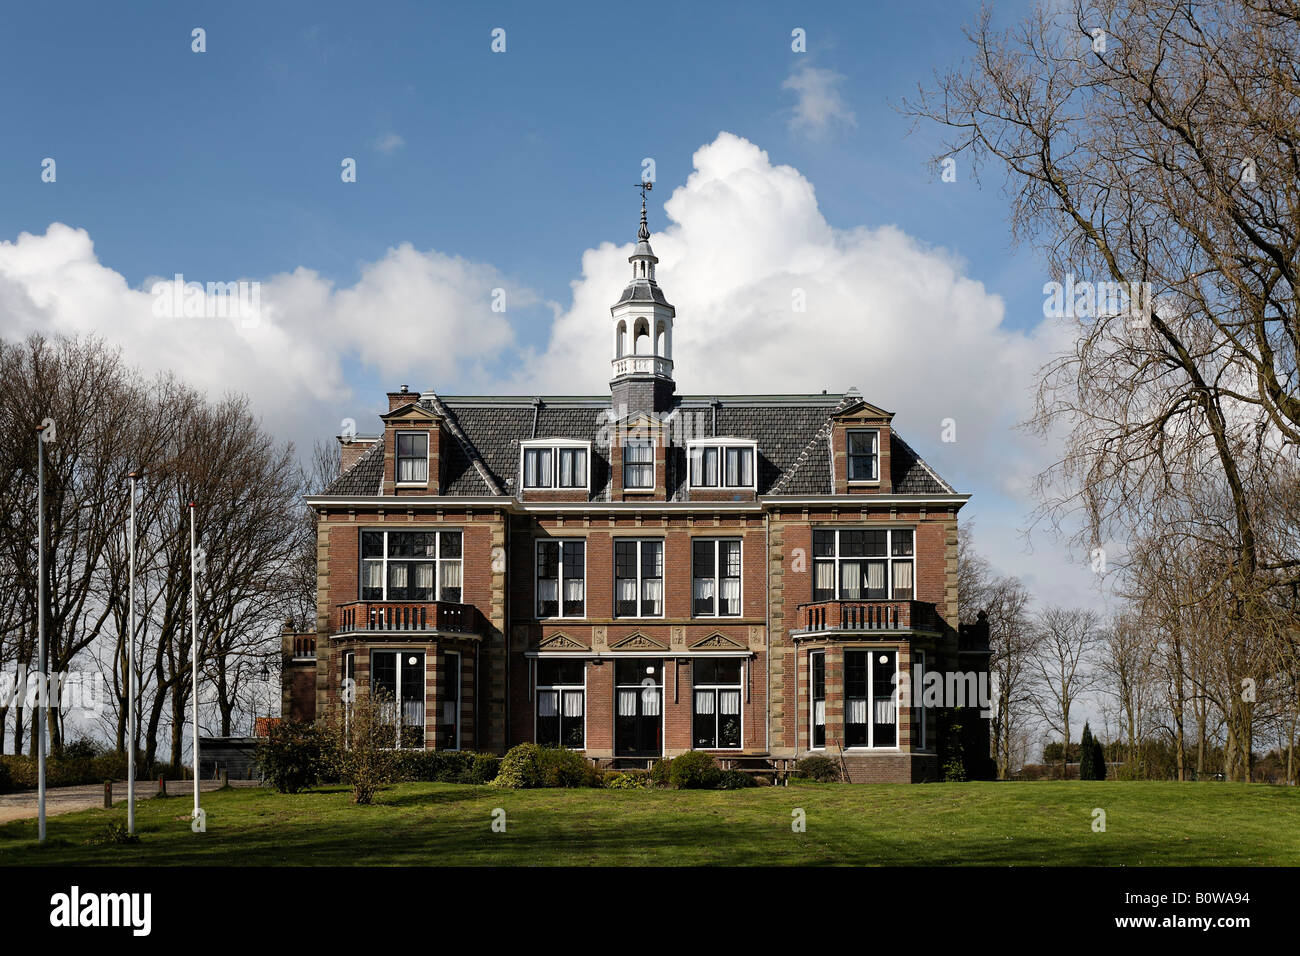 Ancien manoir dans un parc, Middelburg, Walcheren, Zélande, Pays-Bas Banque D'Images